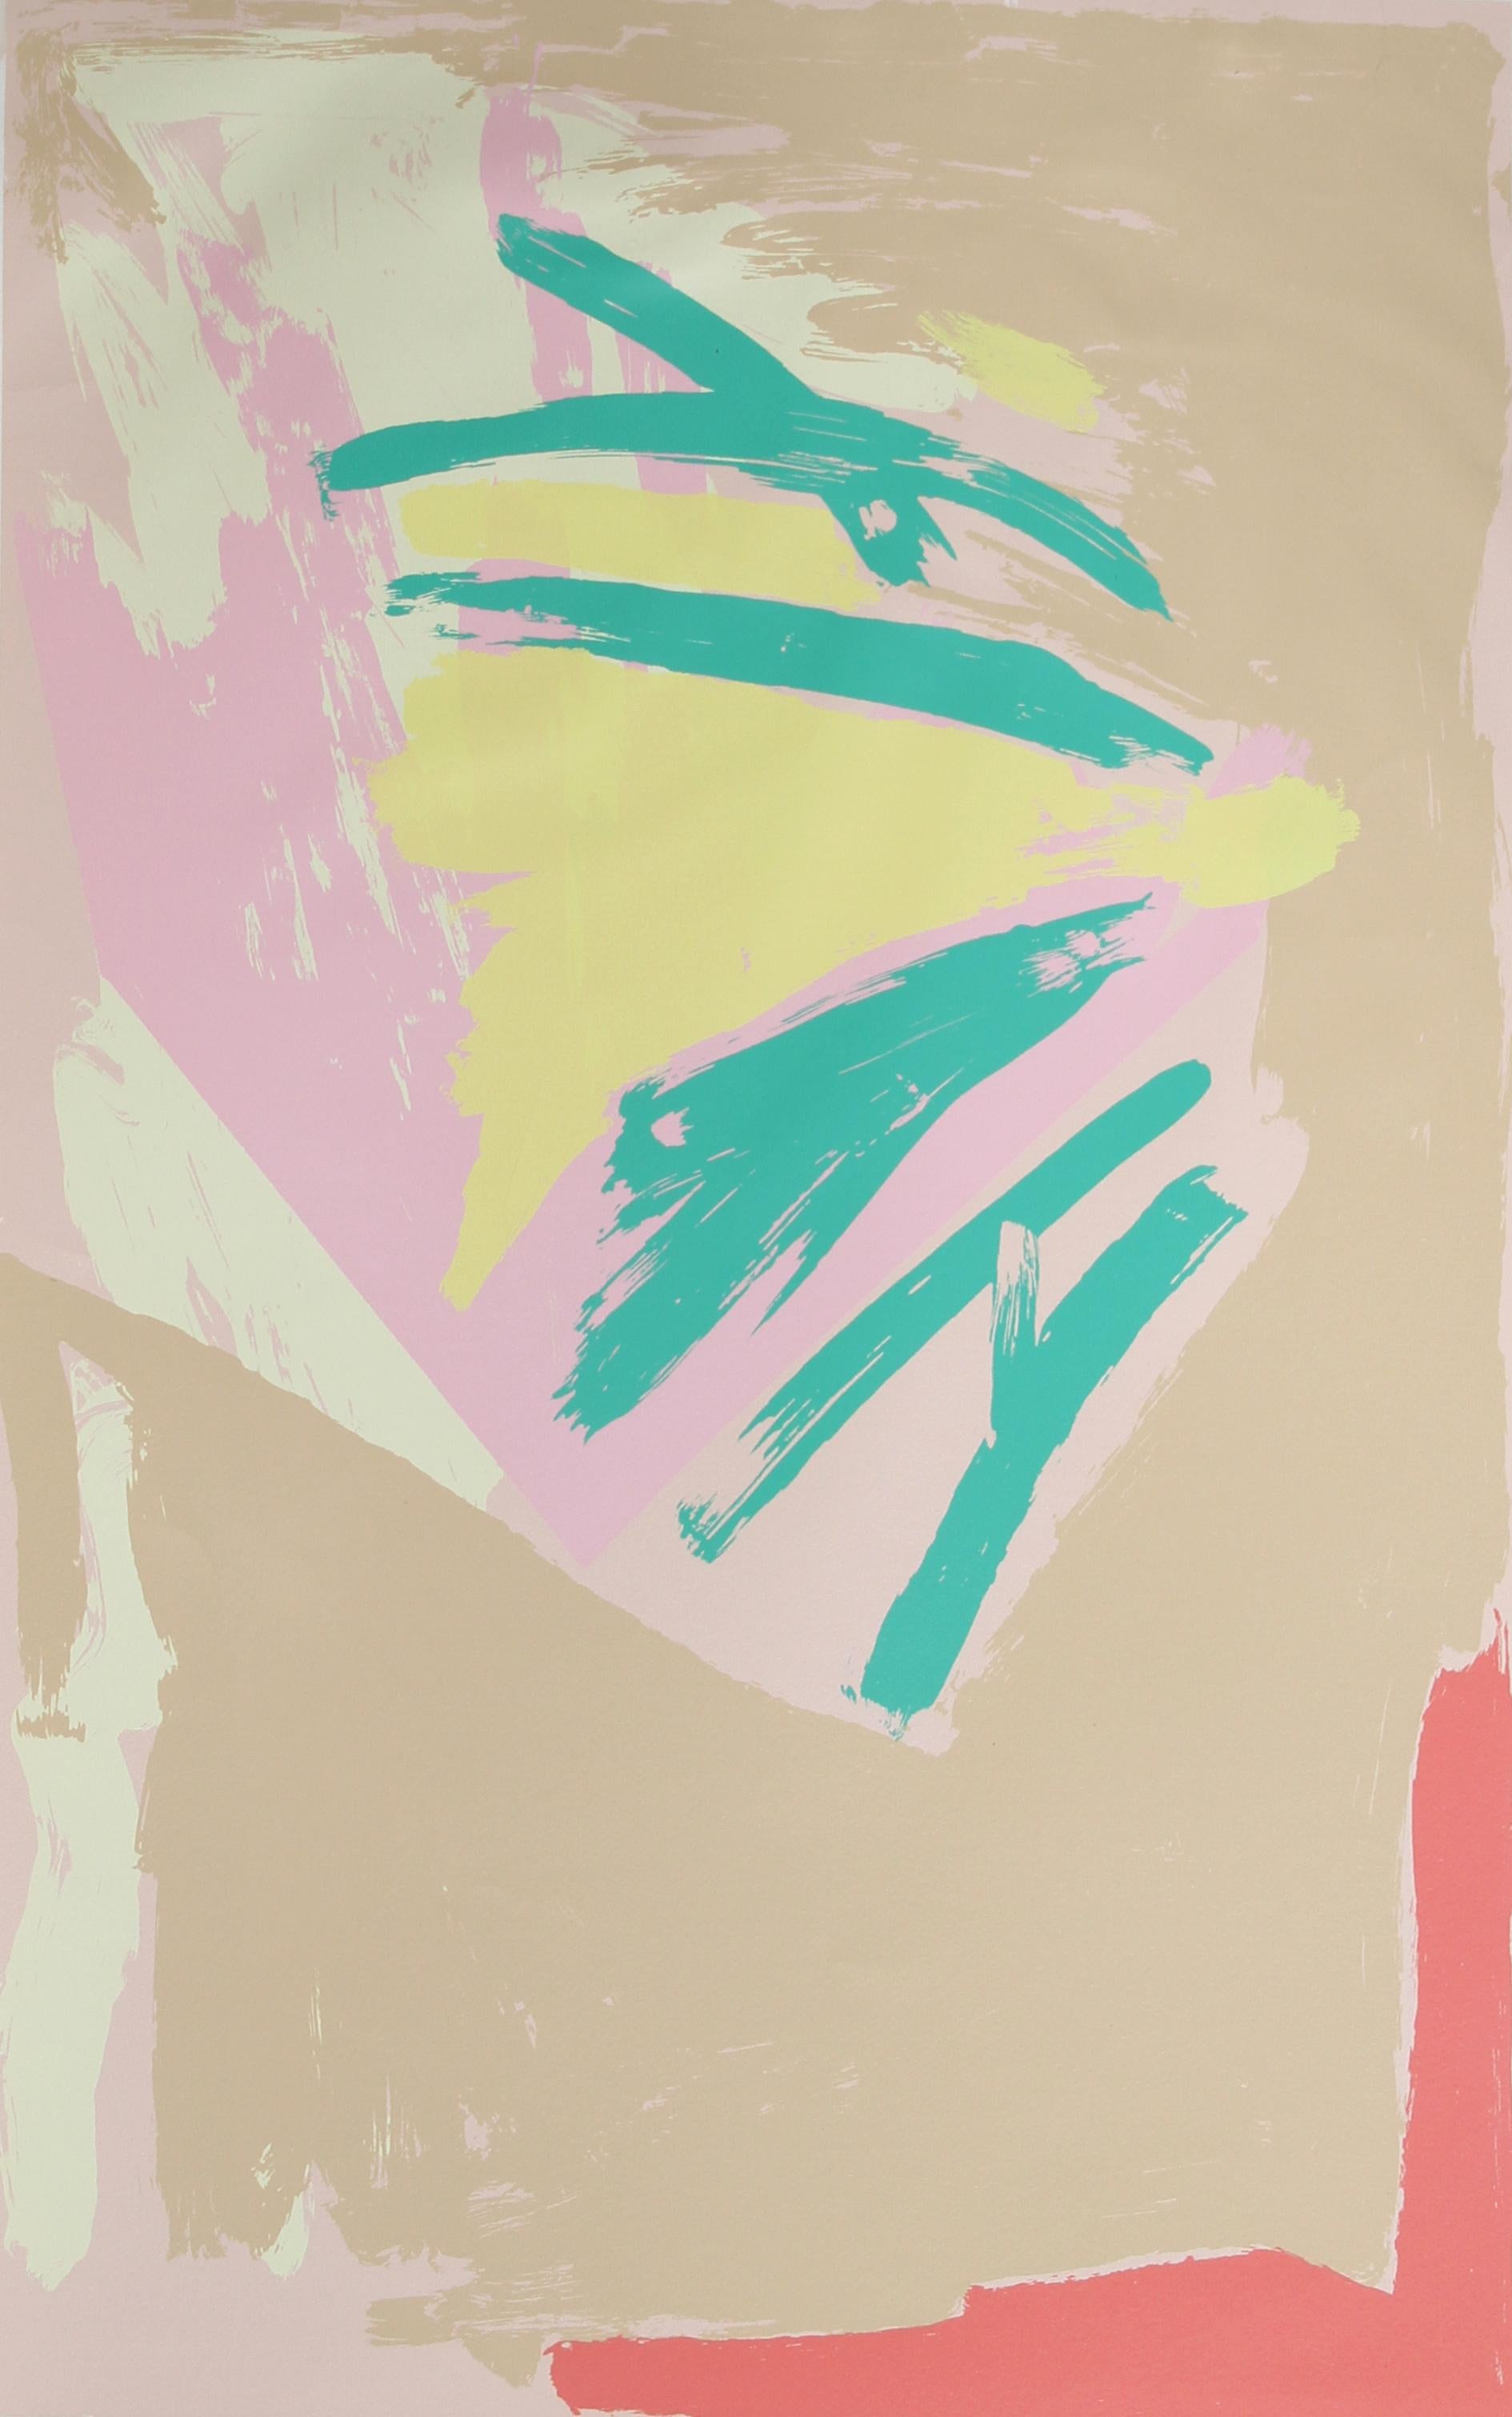 Impression expressionniste abstraite de l'artiste américain Michael Steiner, qui est surtout connu pour ses sculptures à grande échelle. 

Michael Steiner, américain (1945)
Date : 1979
Sérigraphie, signée et numérotée au crayon
Edition de 160
Taille